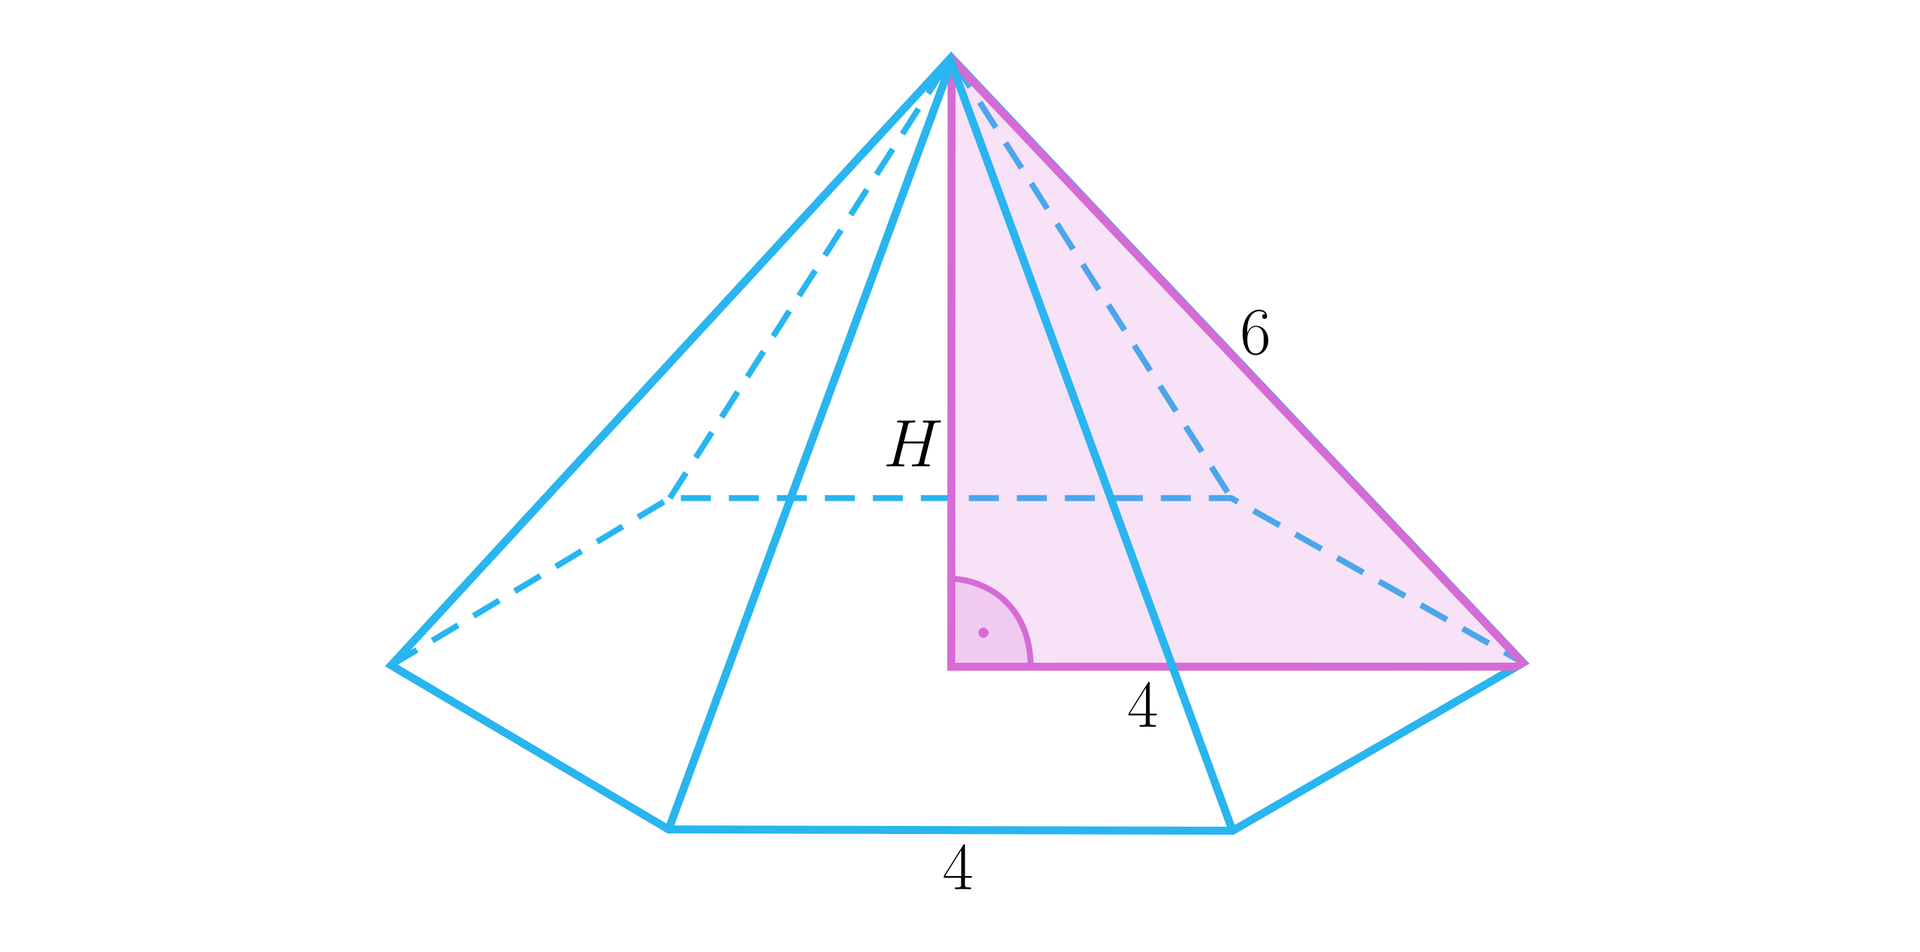 Ilustracja przedstawia ostrosłup, którego podstawą jest sześciokąt, którego bok ma długość cztery. W ostrosłupie zaznaczono jego wysokość, jest ona pod kątem prostym do podstawy i jest podpisana literą H. W ostrosłupie zaznaczono trójkąt składający się z krawędzi bocznej ostrosłupa, wysokości ostrosłupa oraz fragmentu przekątnej podstawy, który łączy te dwa odcinki. Jest to trójkąt prostokątny. Krawędź boczna tego ostrosłupa, która jest przeciwprostokątną, ma długość sześć. Fragment przekątnej ma długość cztery. 